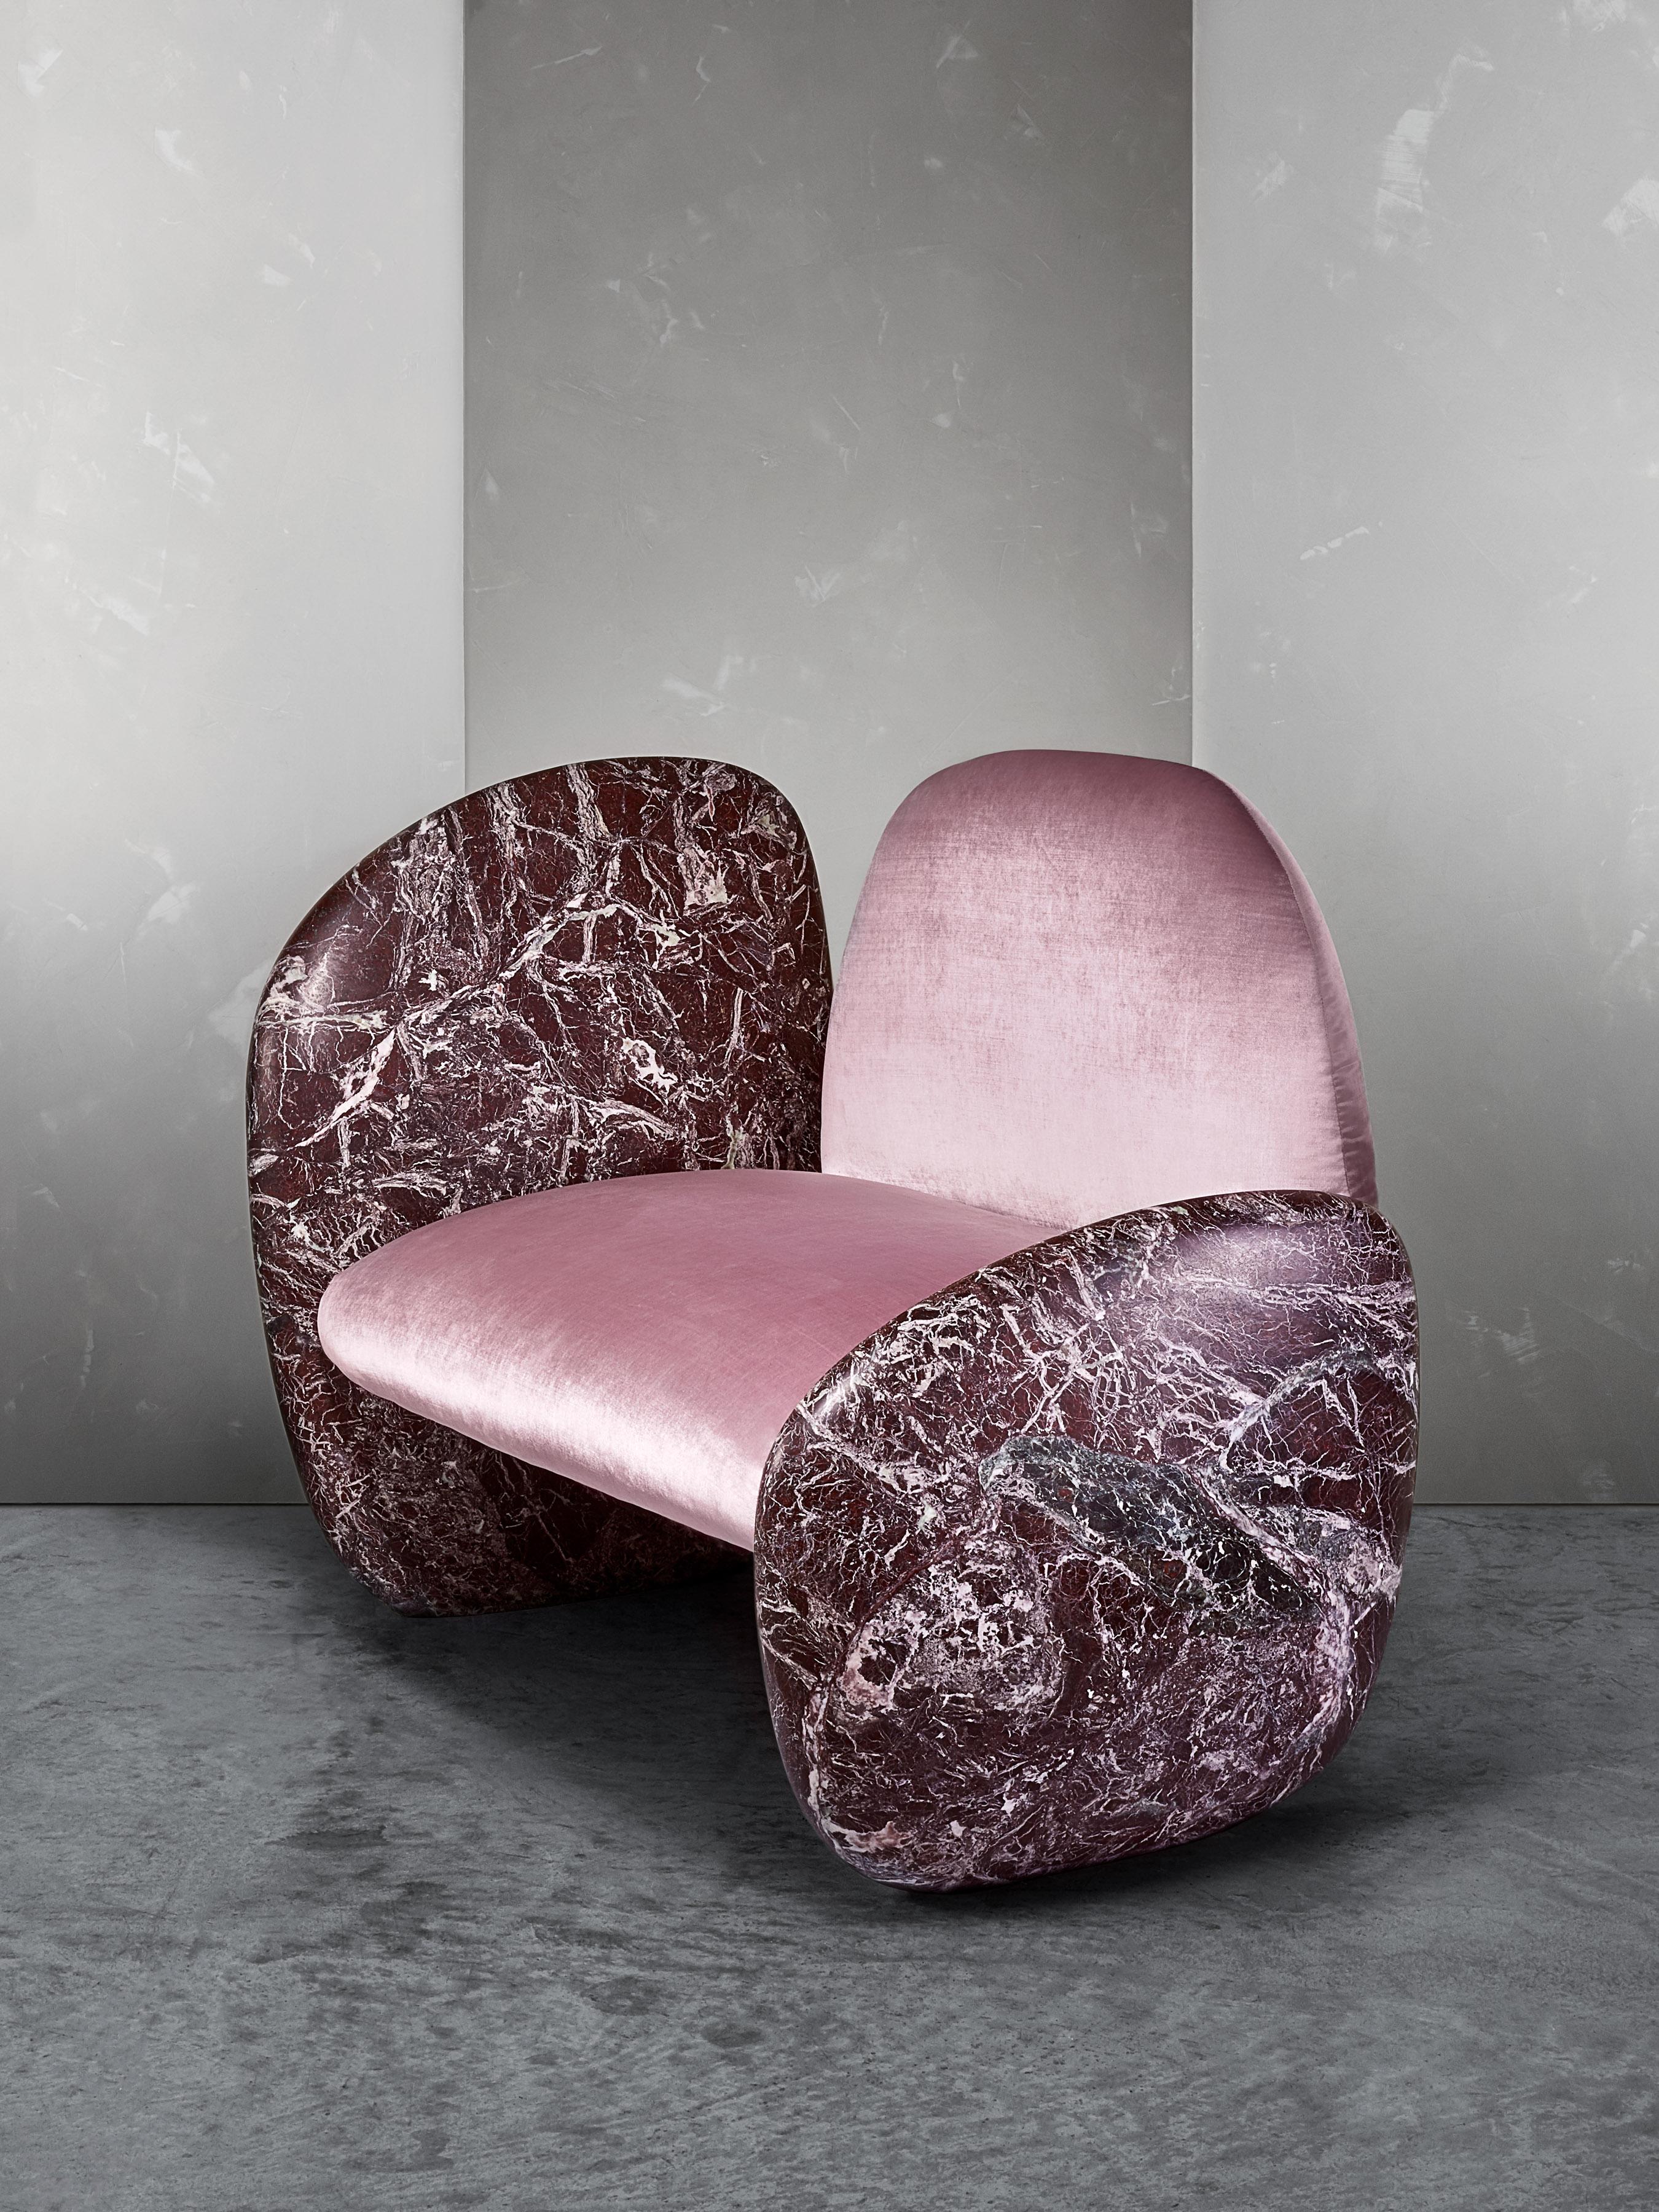 La chaise longue Cabochon est une riche combinaison de marbre asymétrique de Calcutta et de tissu Paonazzo. Antonio Pio Saracino, designer italien de renommée mondiale, s'est inspiré de nos spécimens de rhodochrosite pour créer la chaise Cabochon